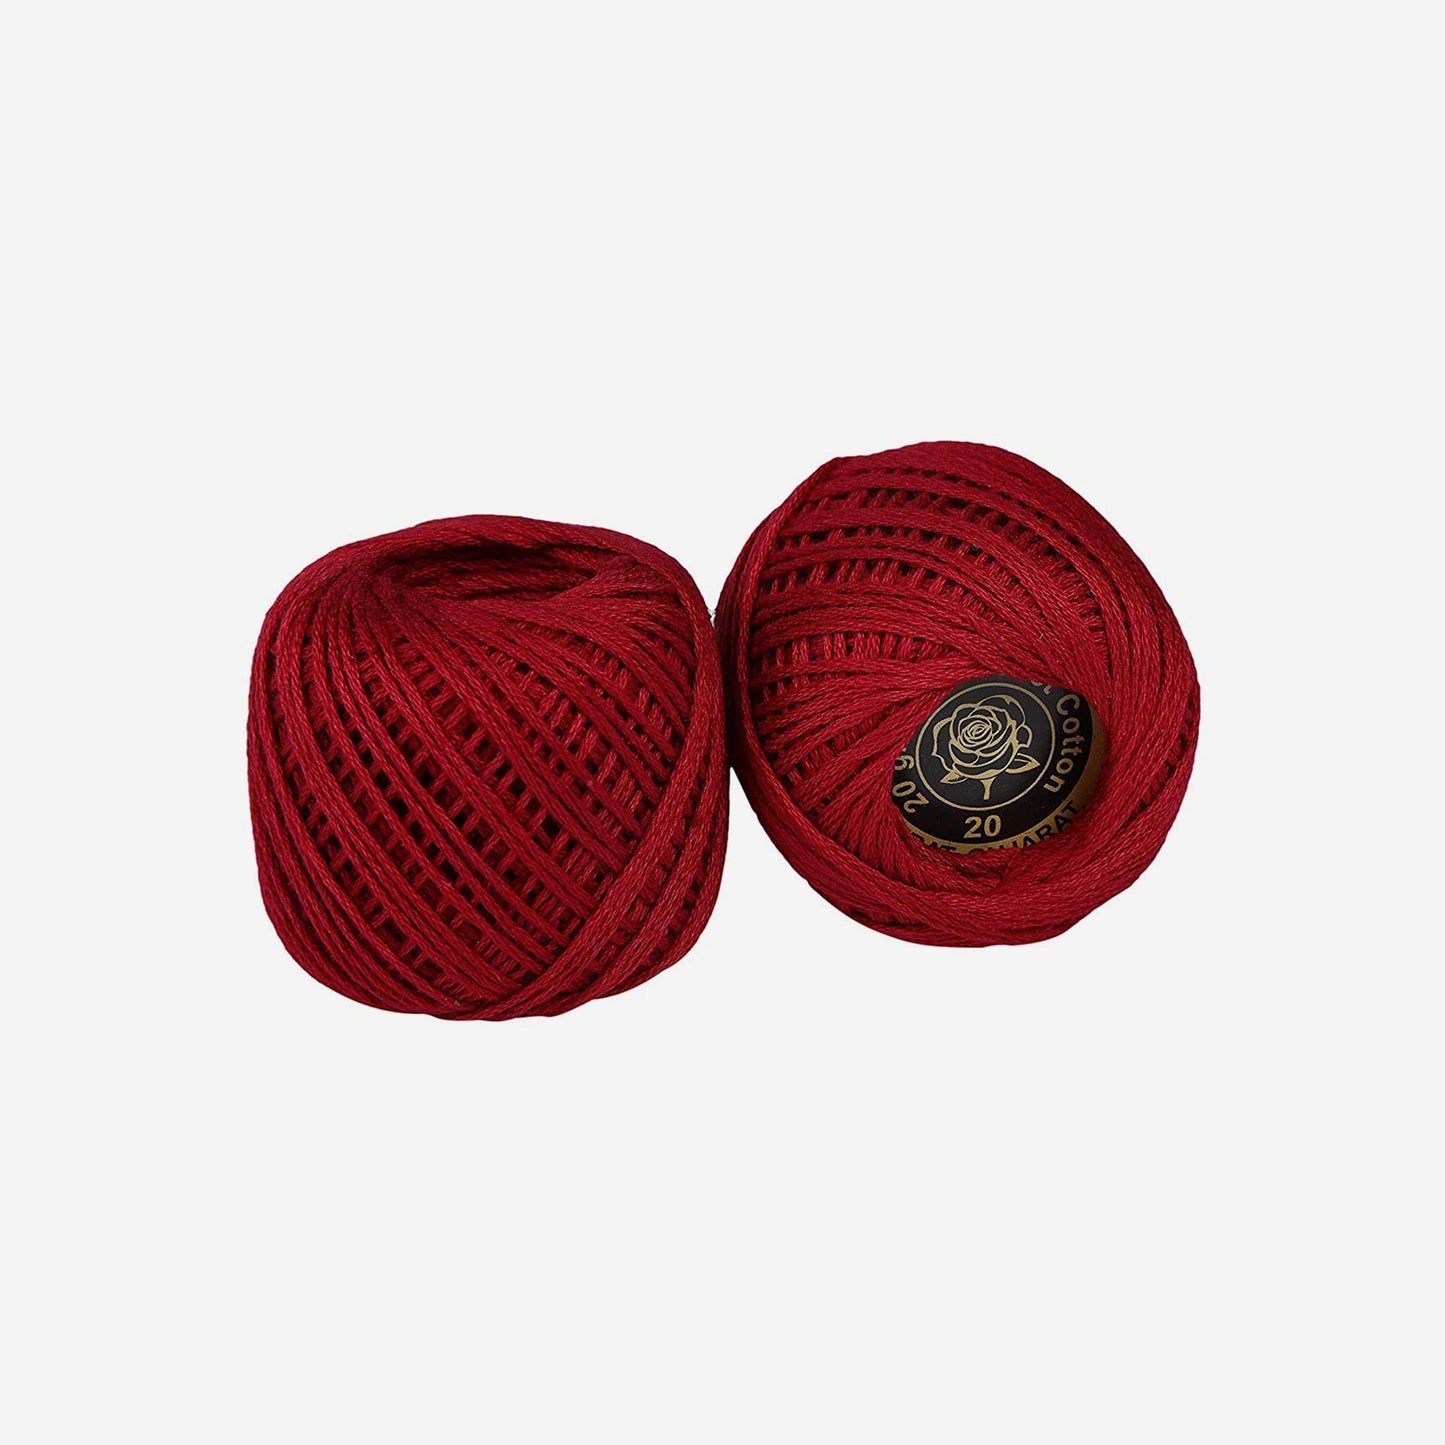 Hand-crochet hoops (Variation 6)